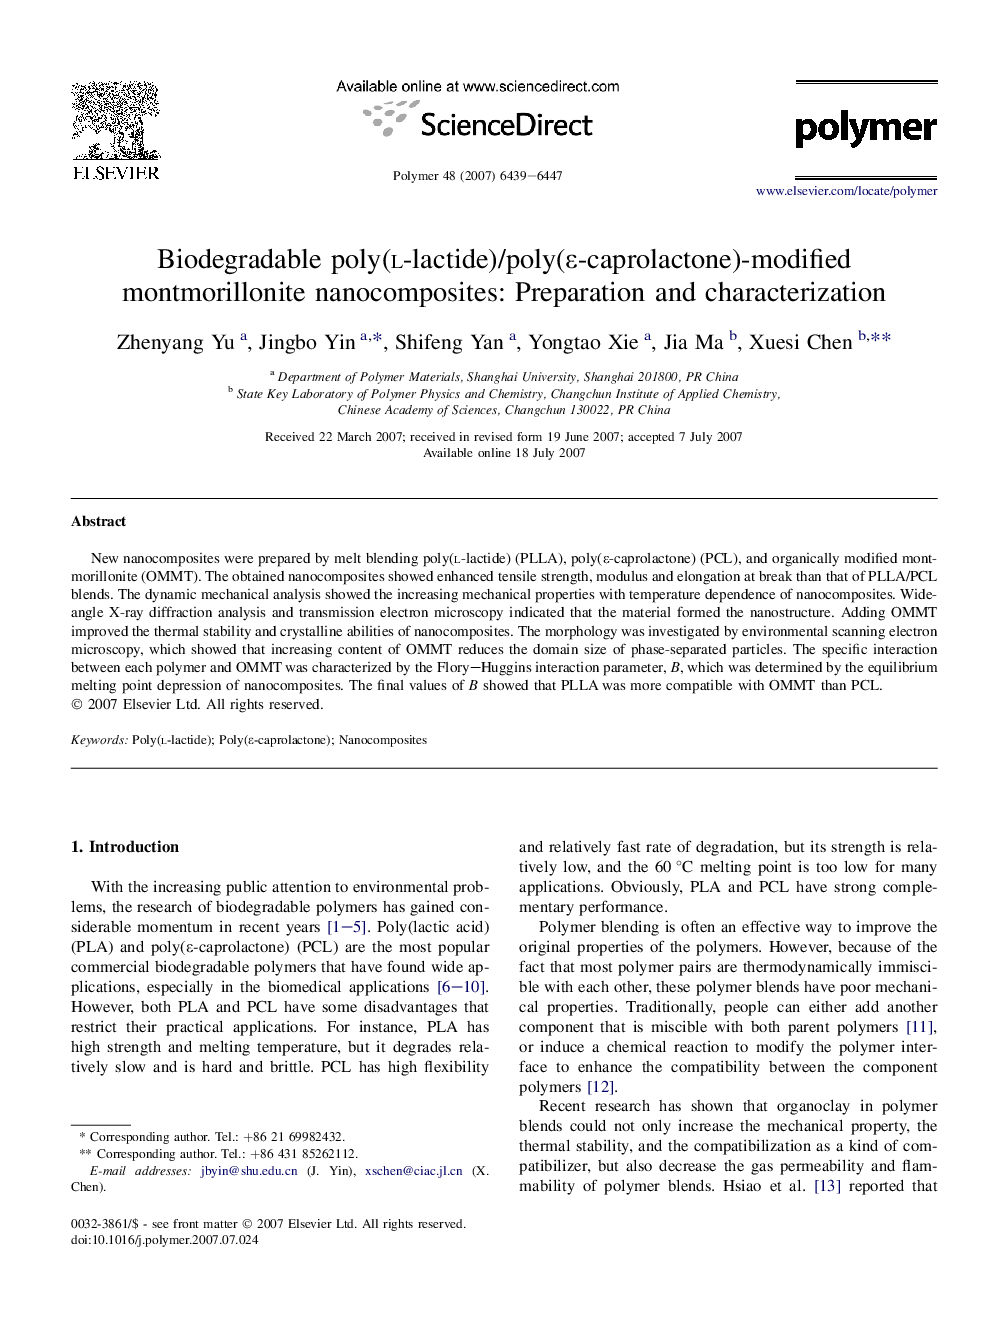 Biodegradable poly(l-lactide)/poly(É-caprolactone)-modified montmorillonite nanocomposites: Preparation and characterization